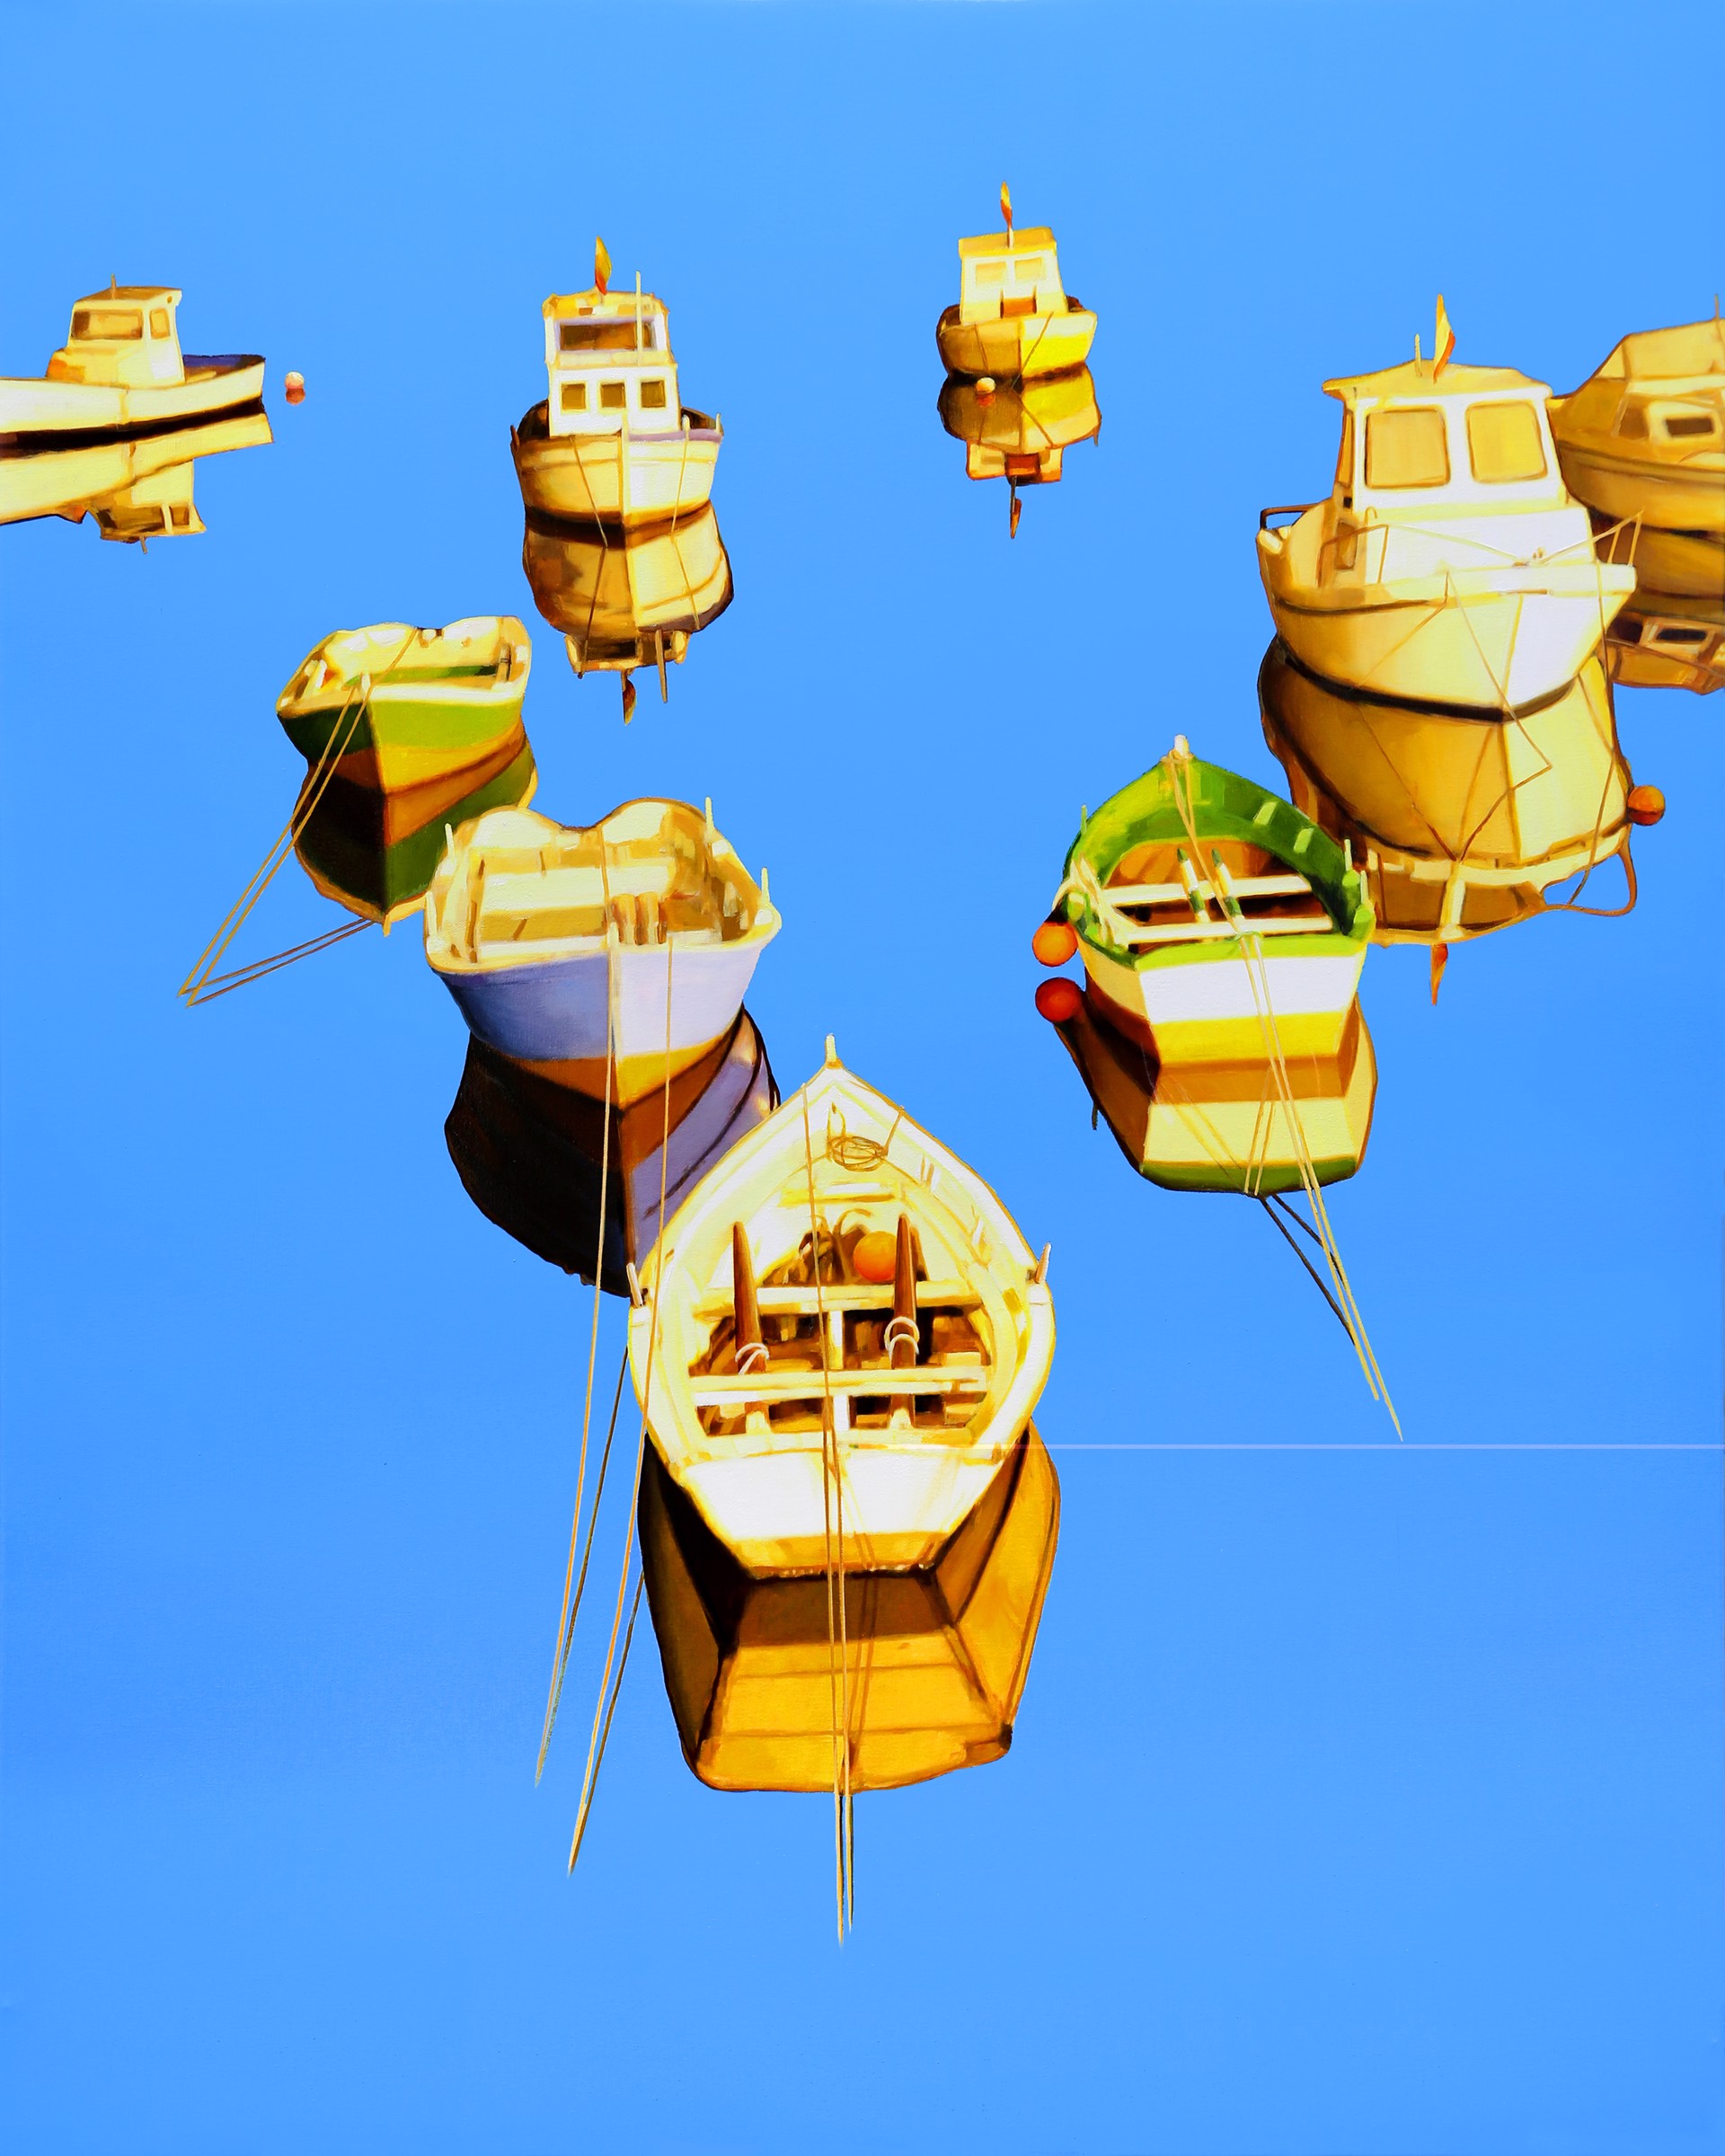 Fishing Fleet by Roger Hayden Johnson